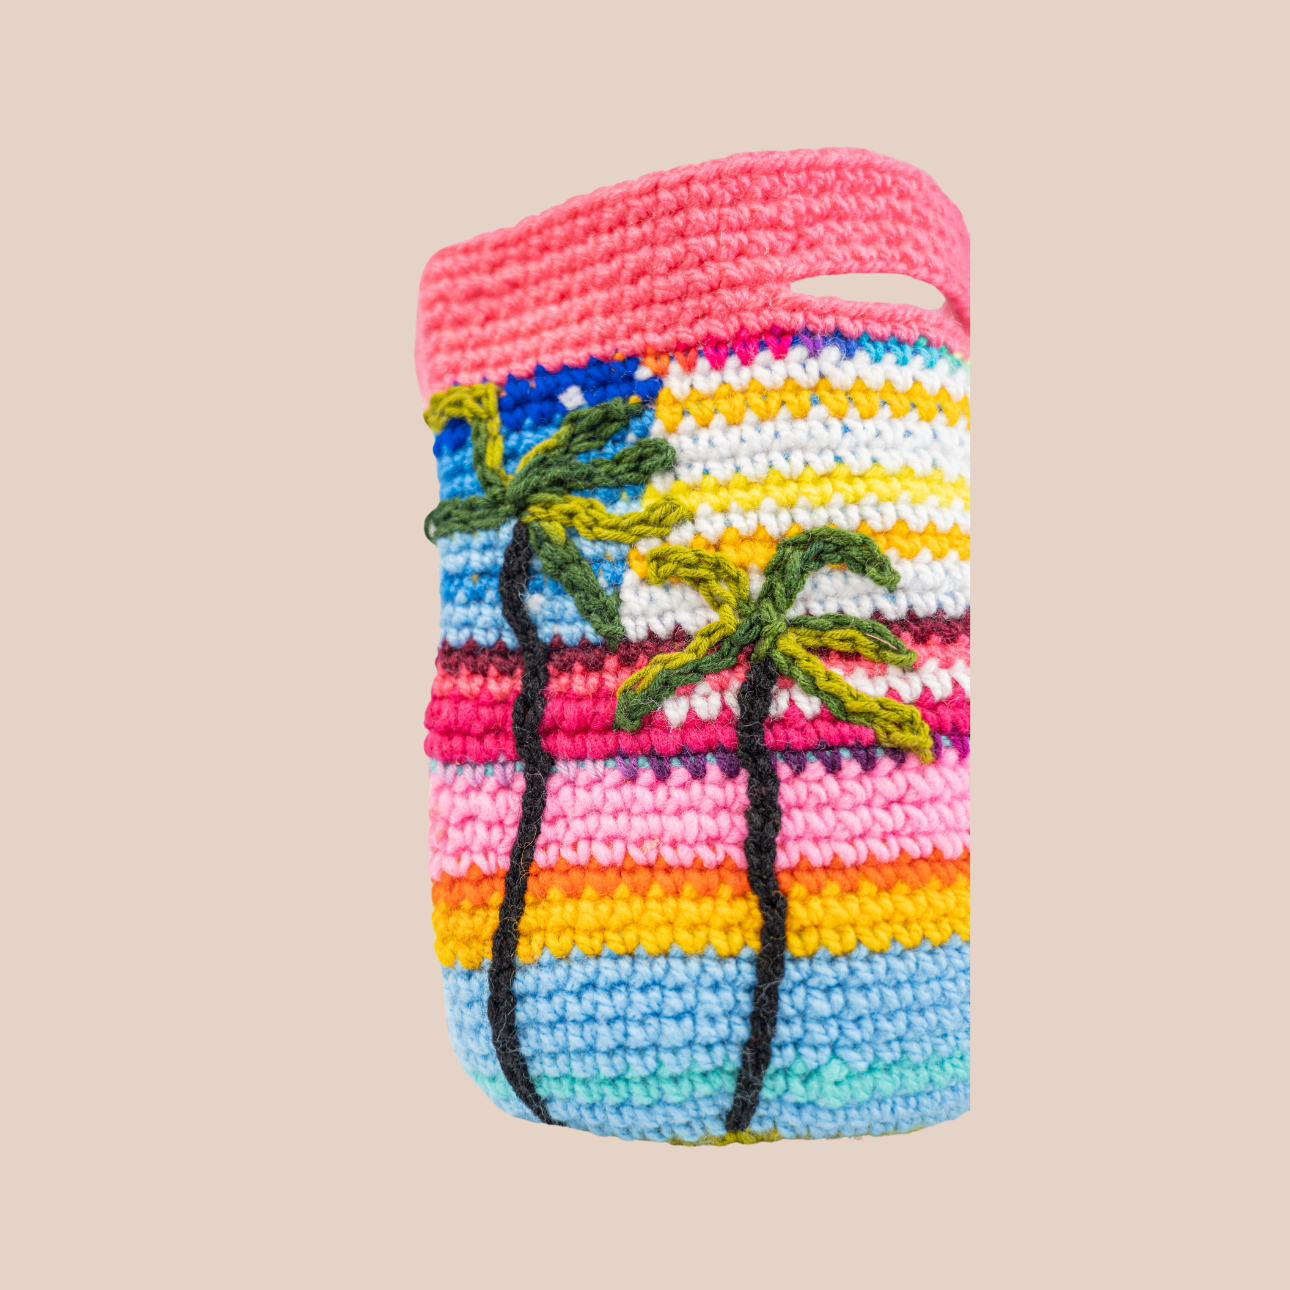 Image d'un sac aux motifs palmiers, sac en laine crochetée arborant des couleurs vives et audacieuses